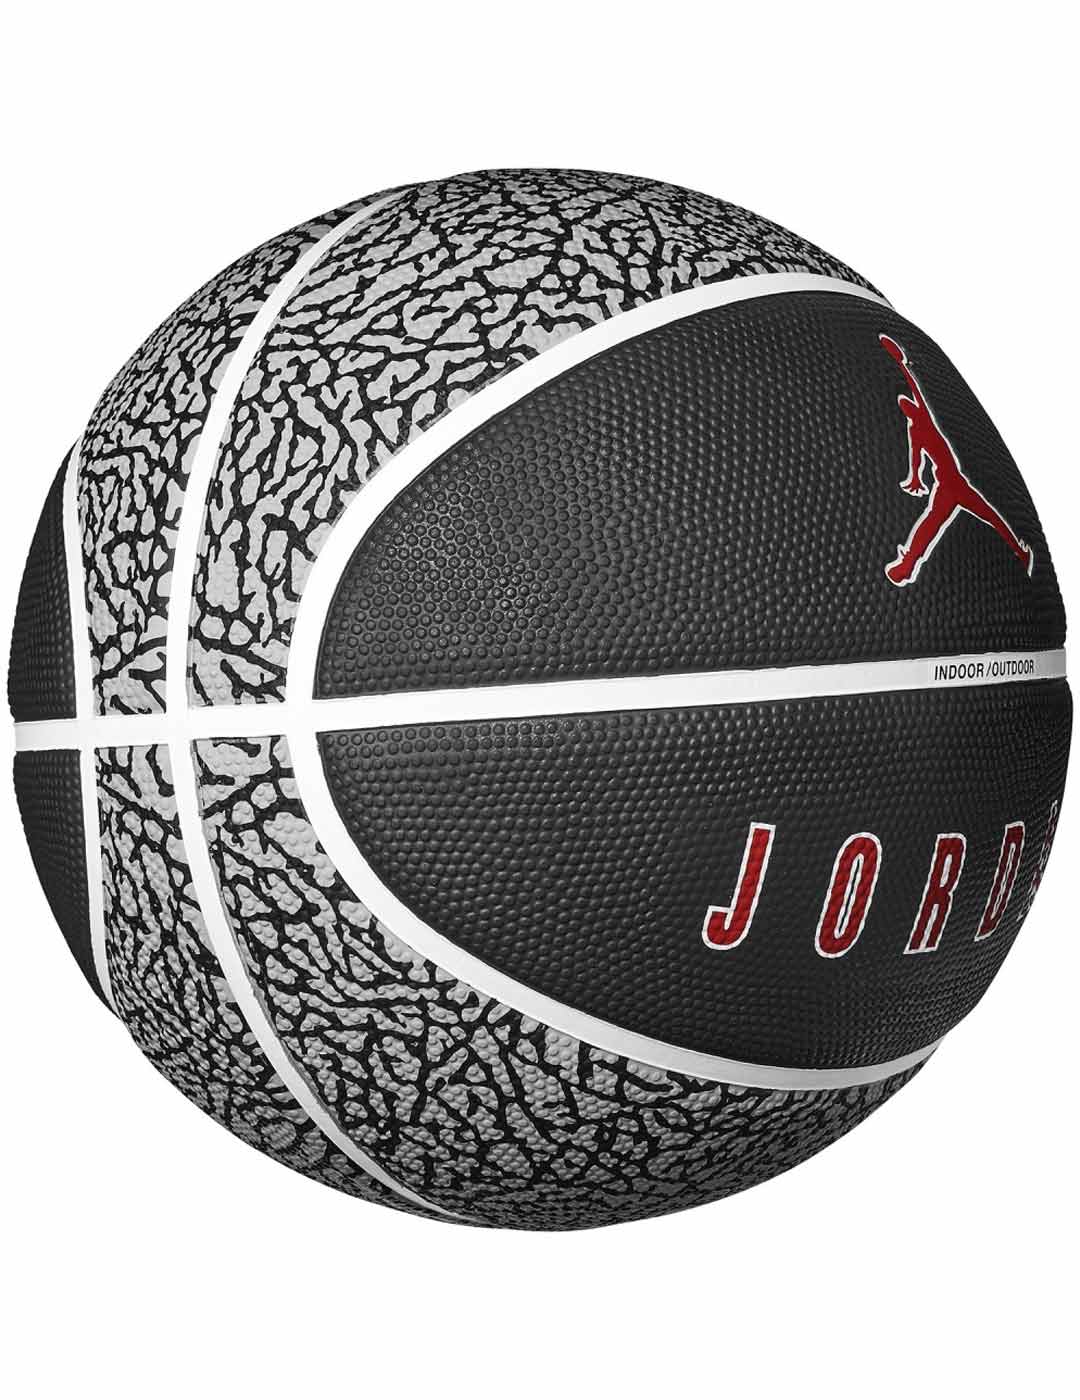 balón de baloncesto Jordan gris talla 6